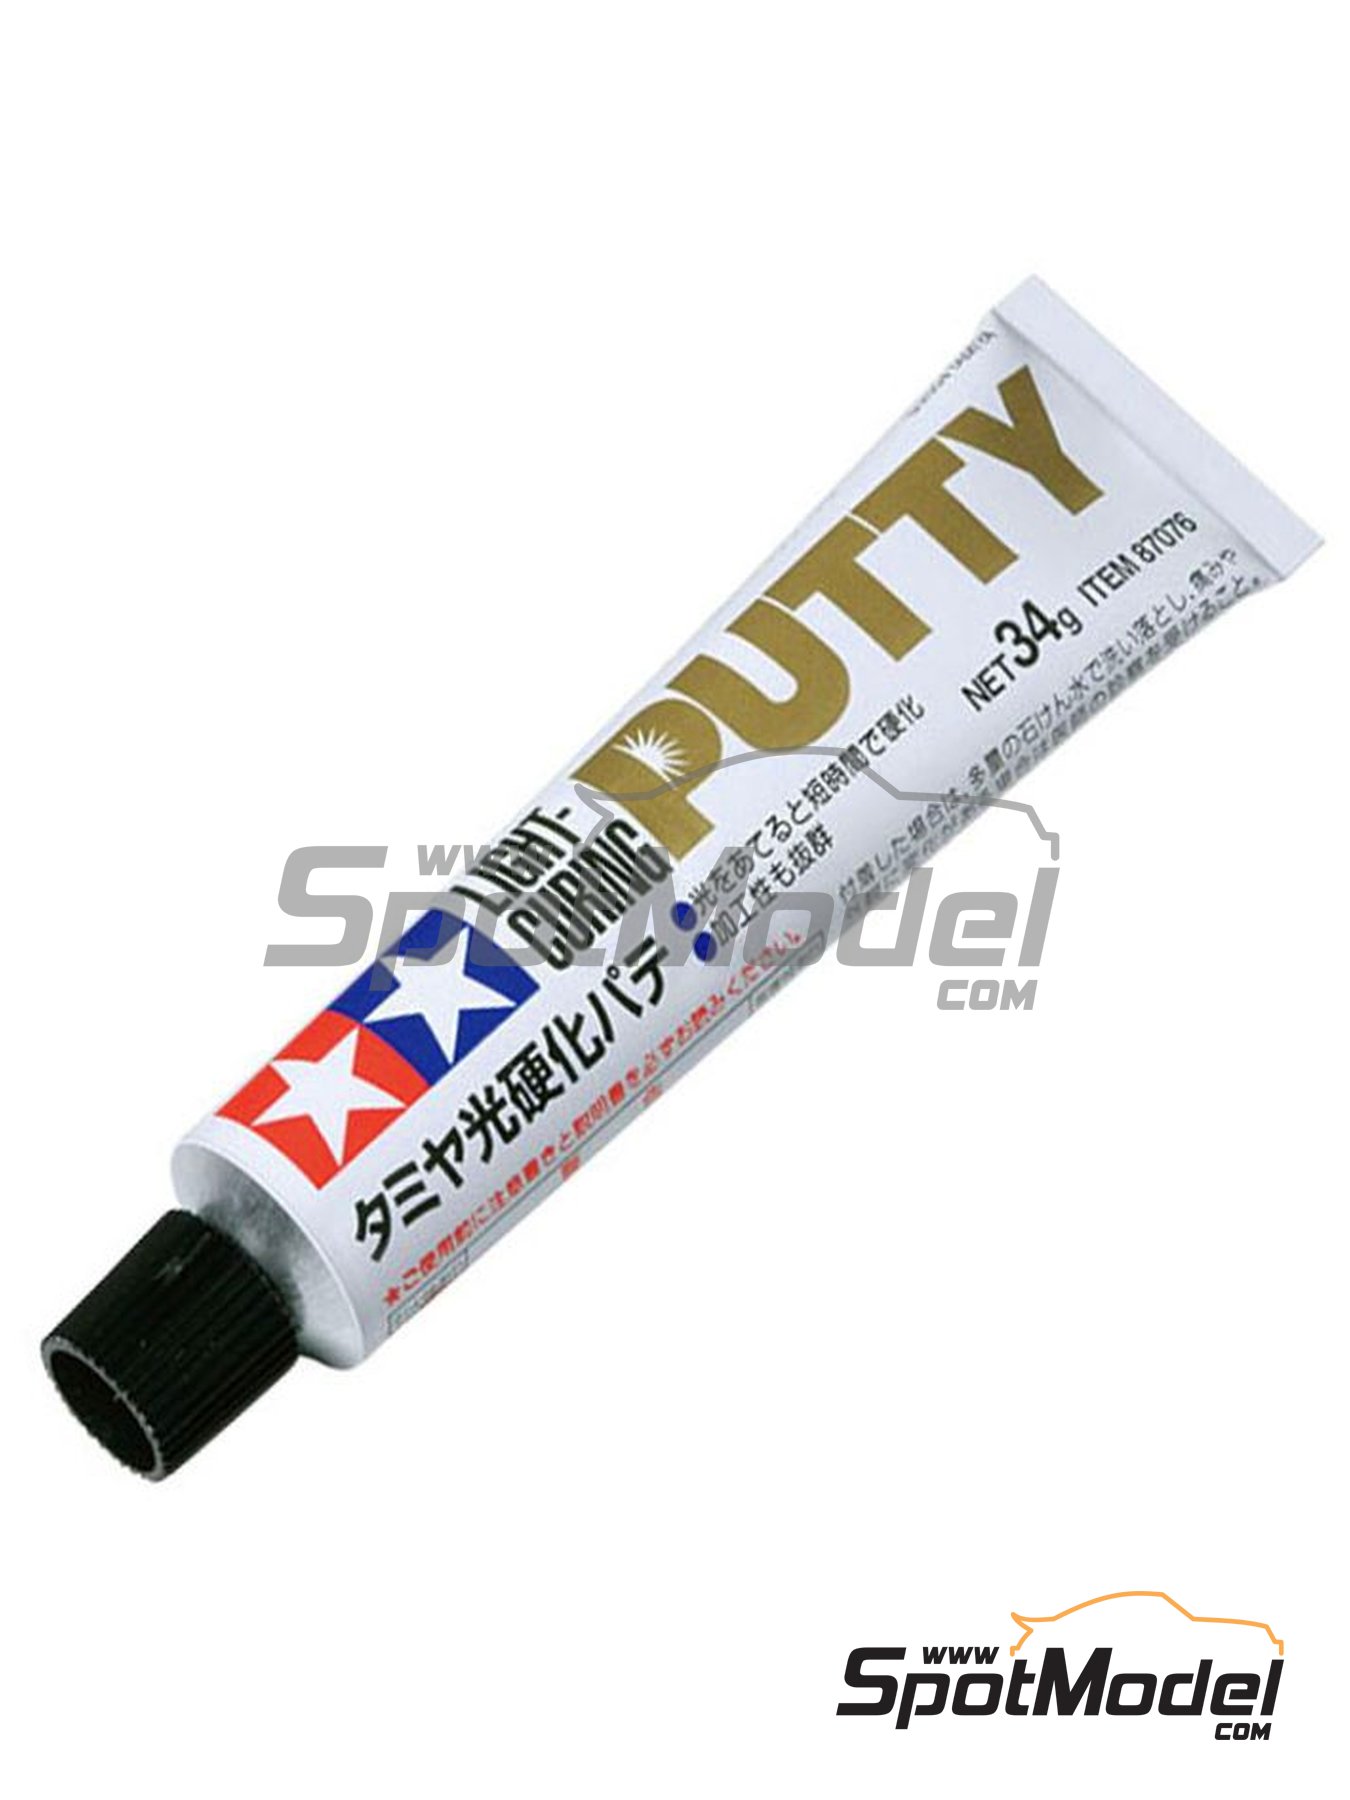 Tamiya: Putty - Tamiya epoxy putty. - 25 grams - for all kits (ref